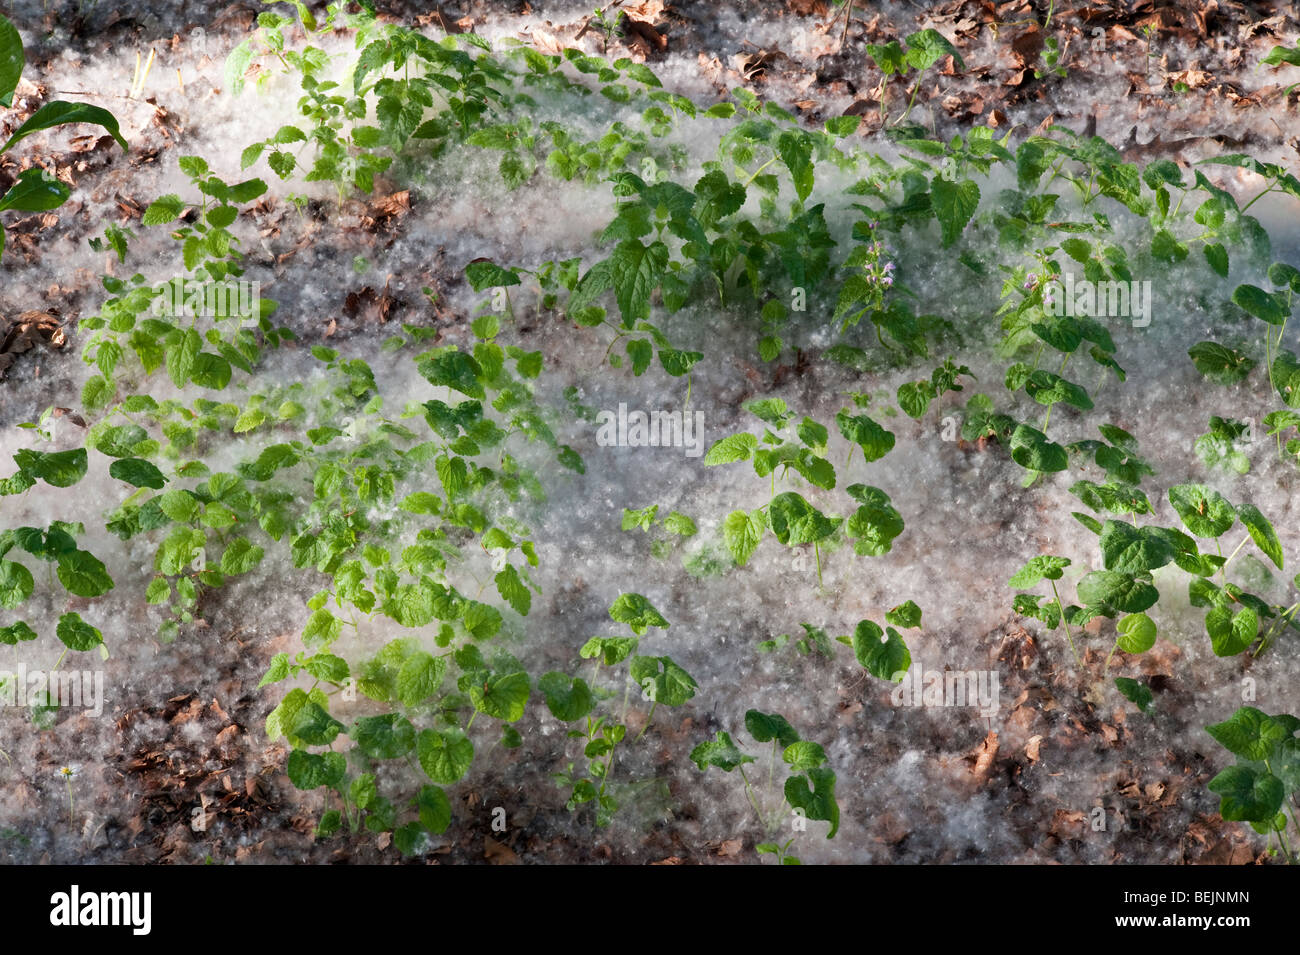 Les graines de peupliers (populus) forment des dérives profondes sur le sol au début de l'été dans les célèbres jardins de Ninfa, Latium, Italie. Banque D'Images